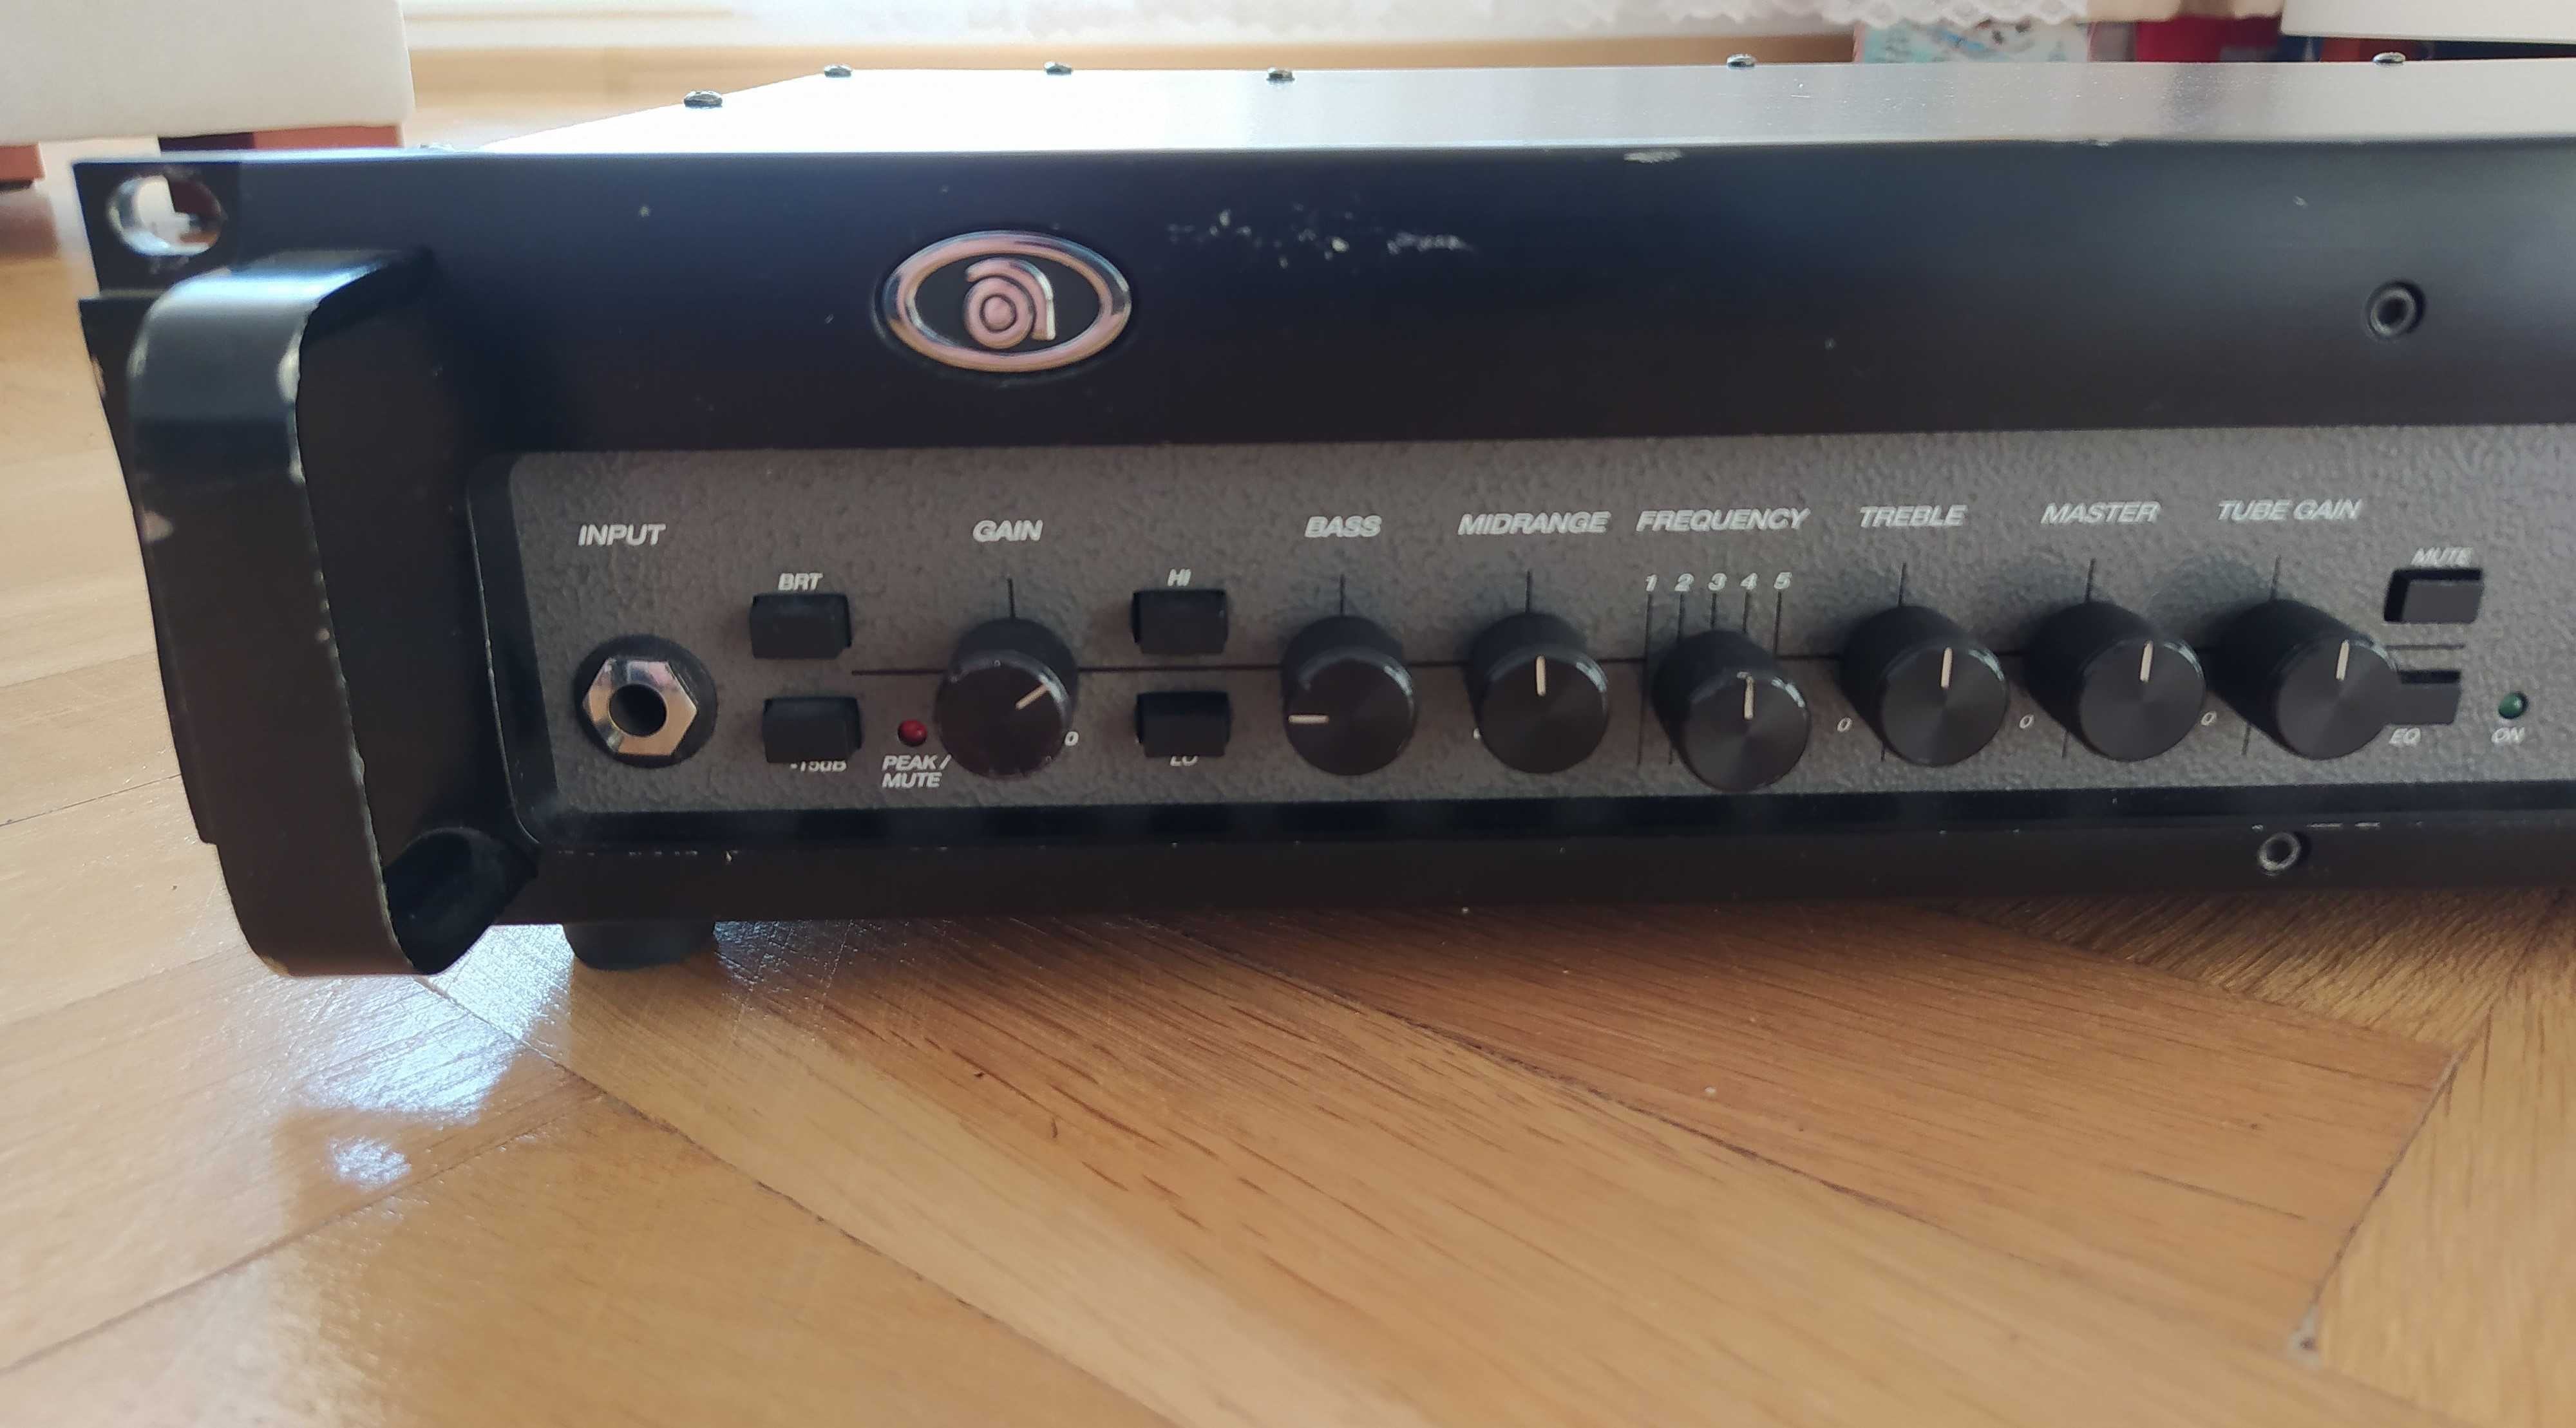 Ampeg SVT3 PRO - hybrydowy wzmacniacz basowy, made in USA (head, amp)